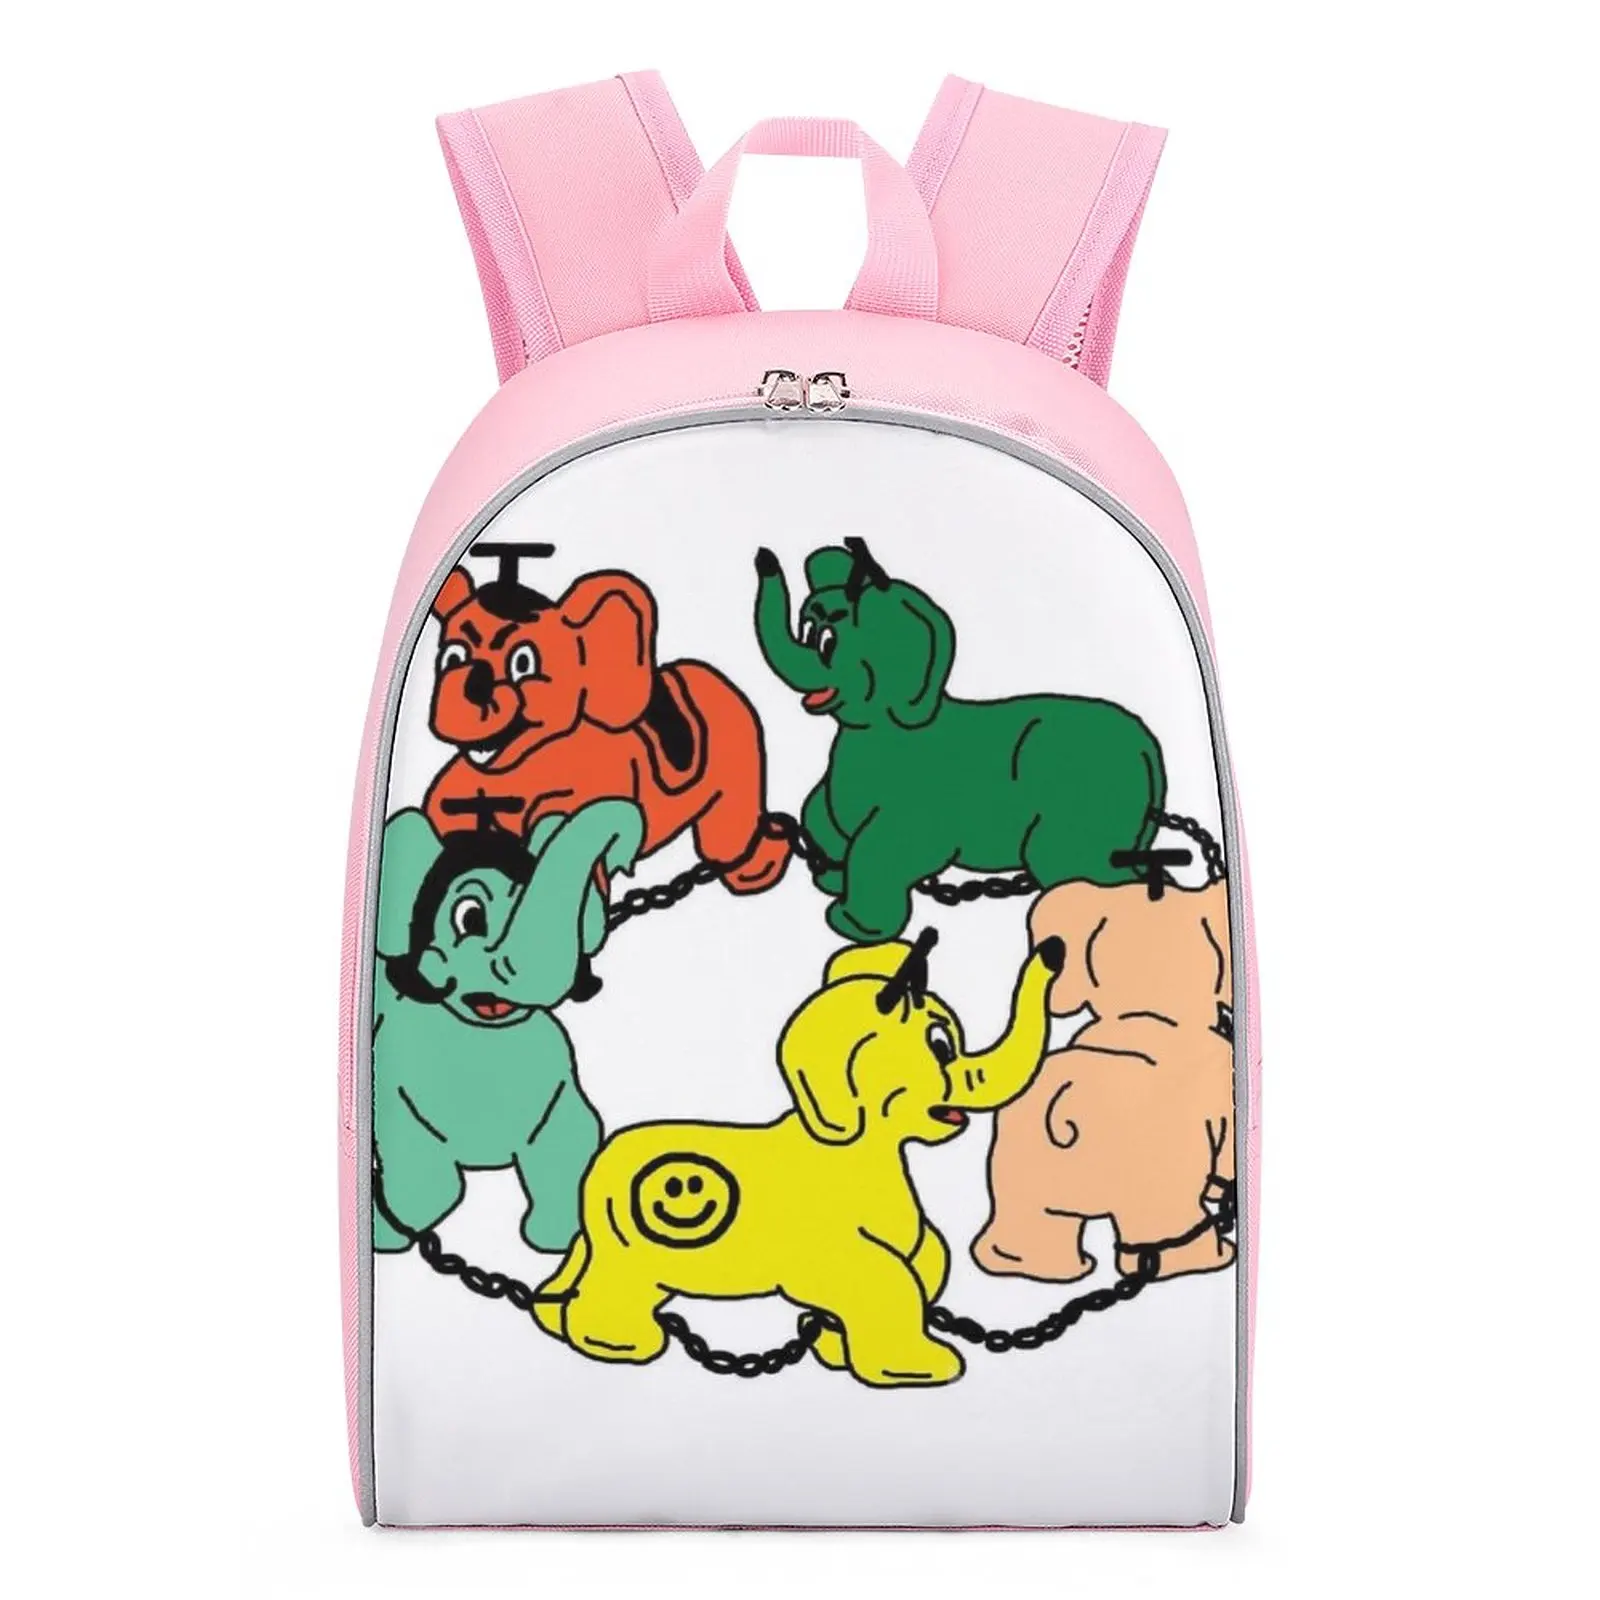 Children's Backpack School Backpack for Girls Travel Backpack High Capacity Knapsack Kids Backpack Boys Girl Child Backpack